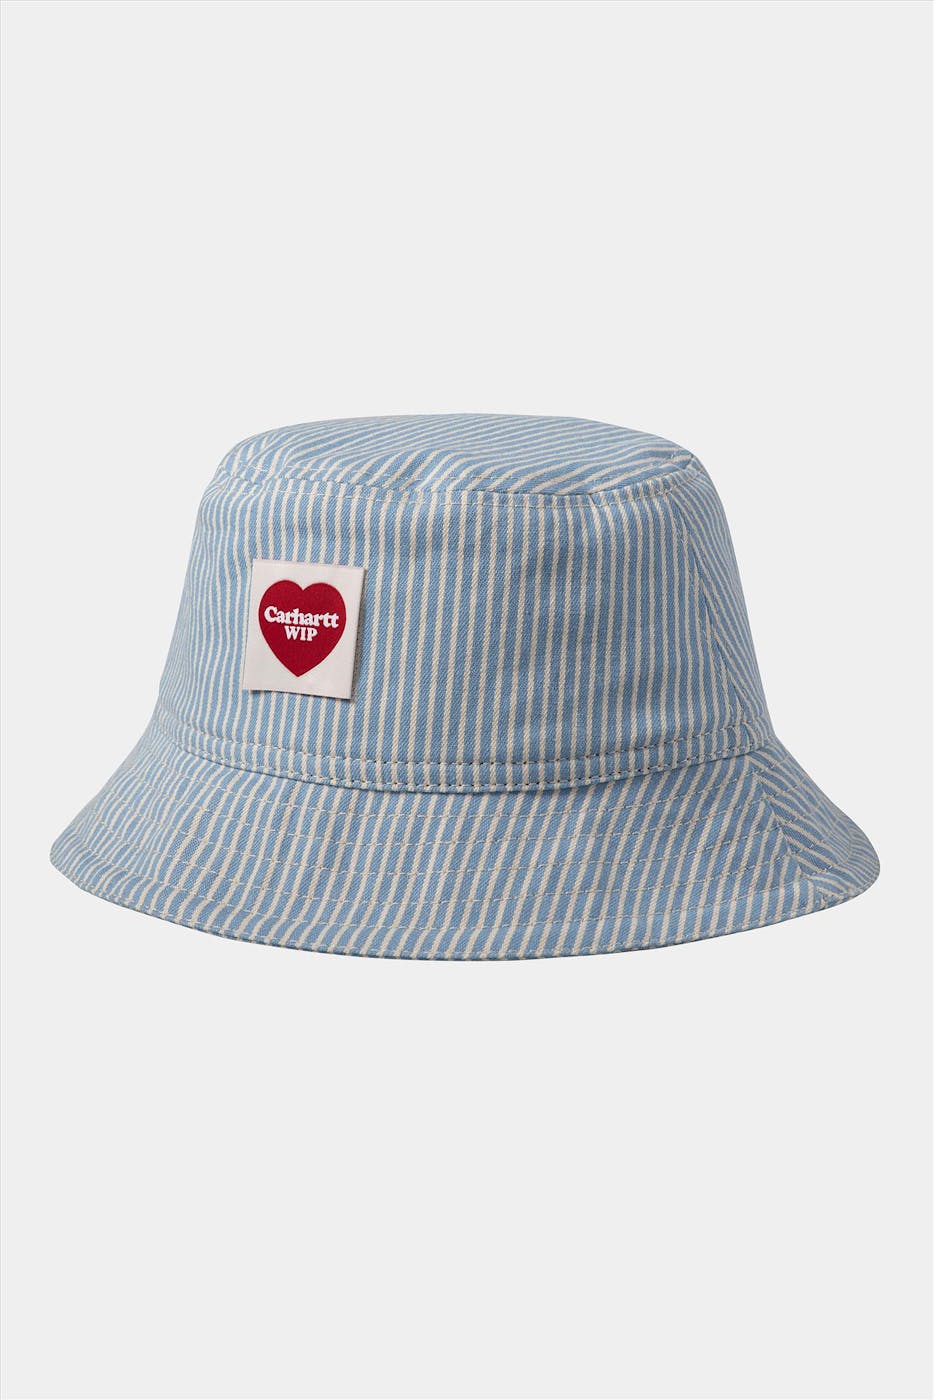 Carhartt WIP - Lichtblauwe-witte Terrell bucket hat